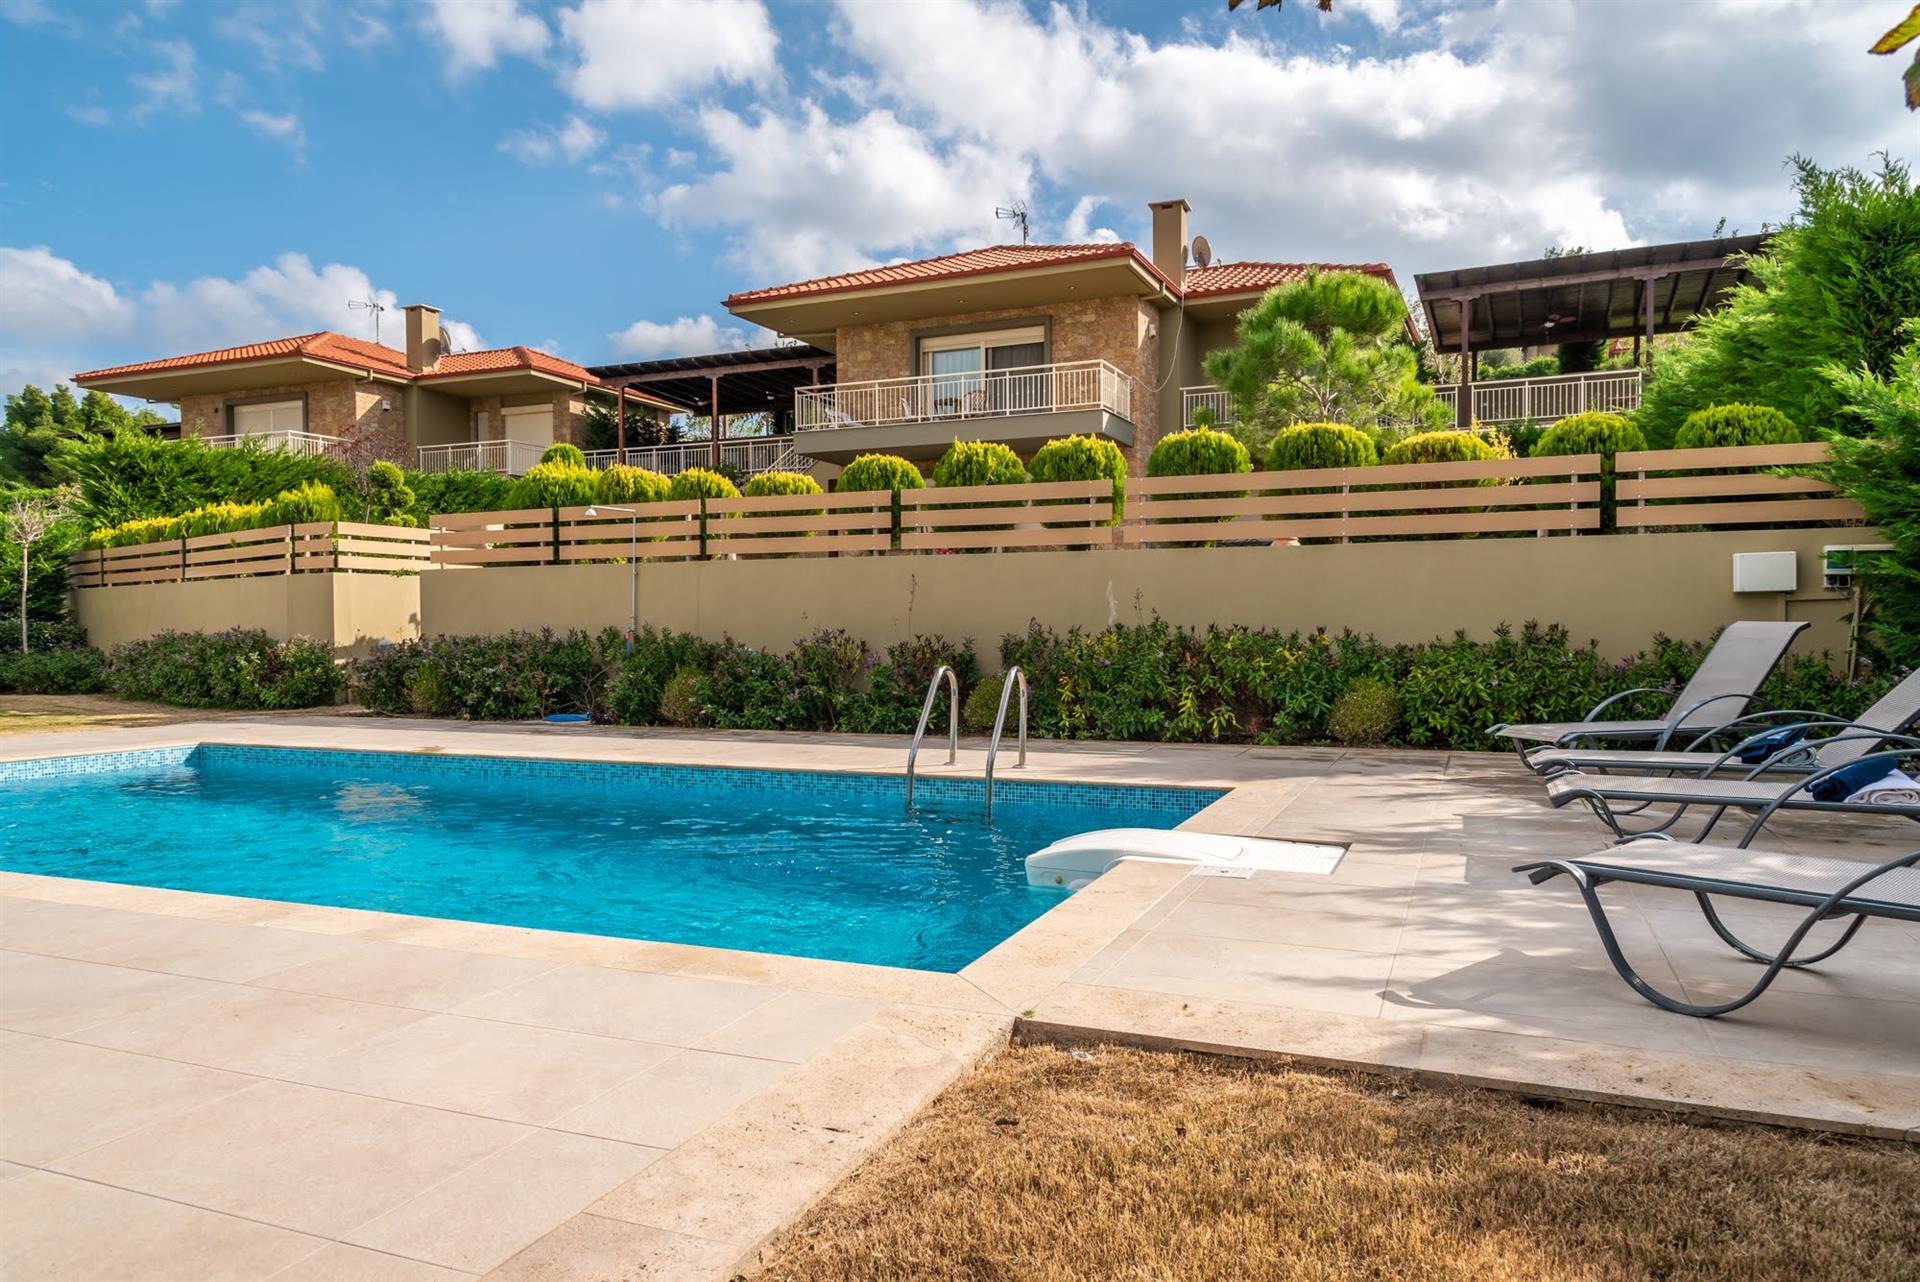 5Bd villa met zwembad in Sani met prachtig uitzicht, zwembad en grote tuin